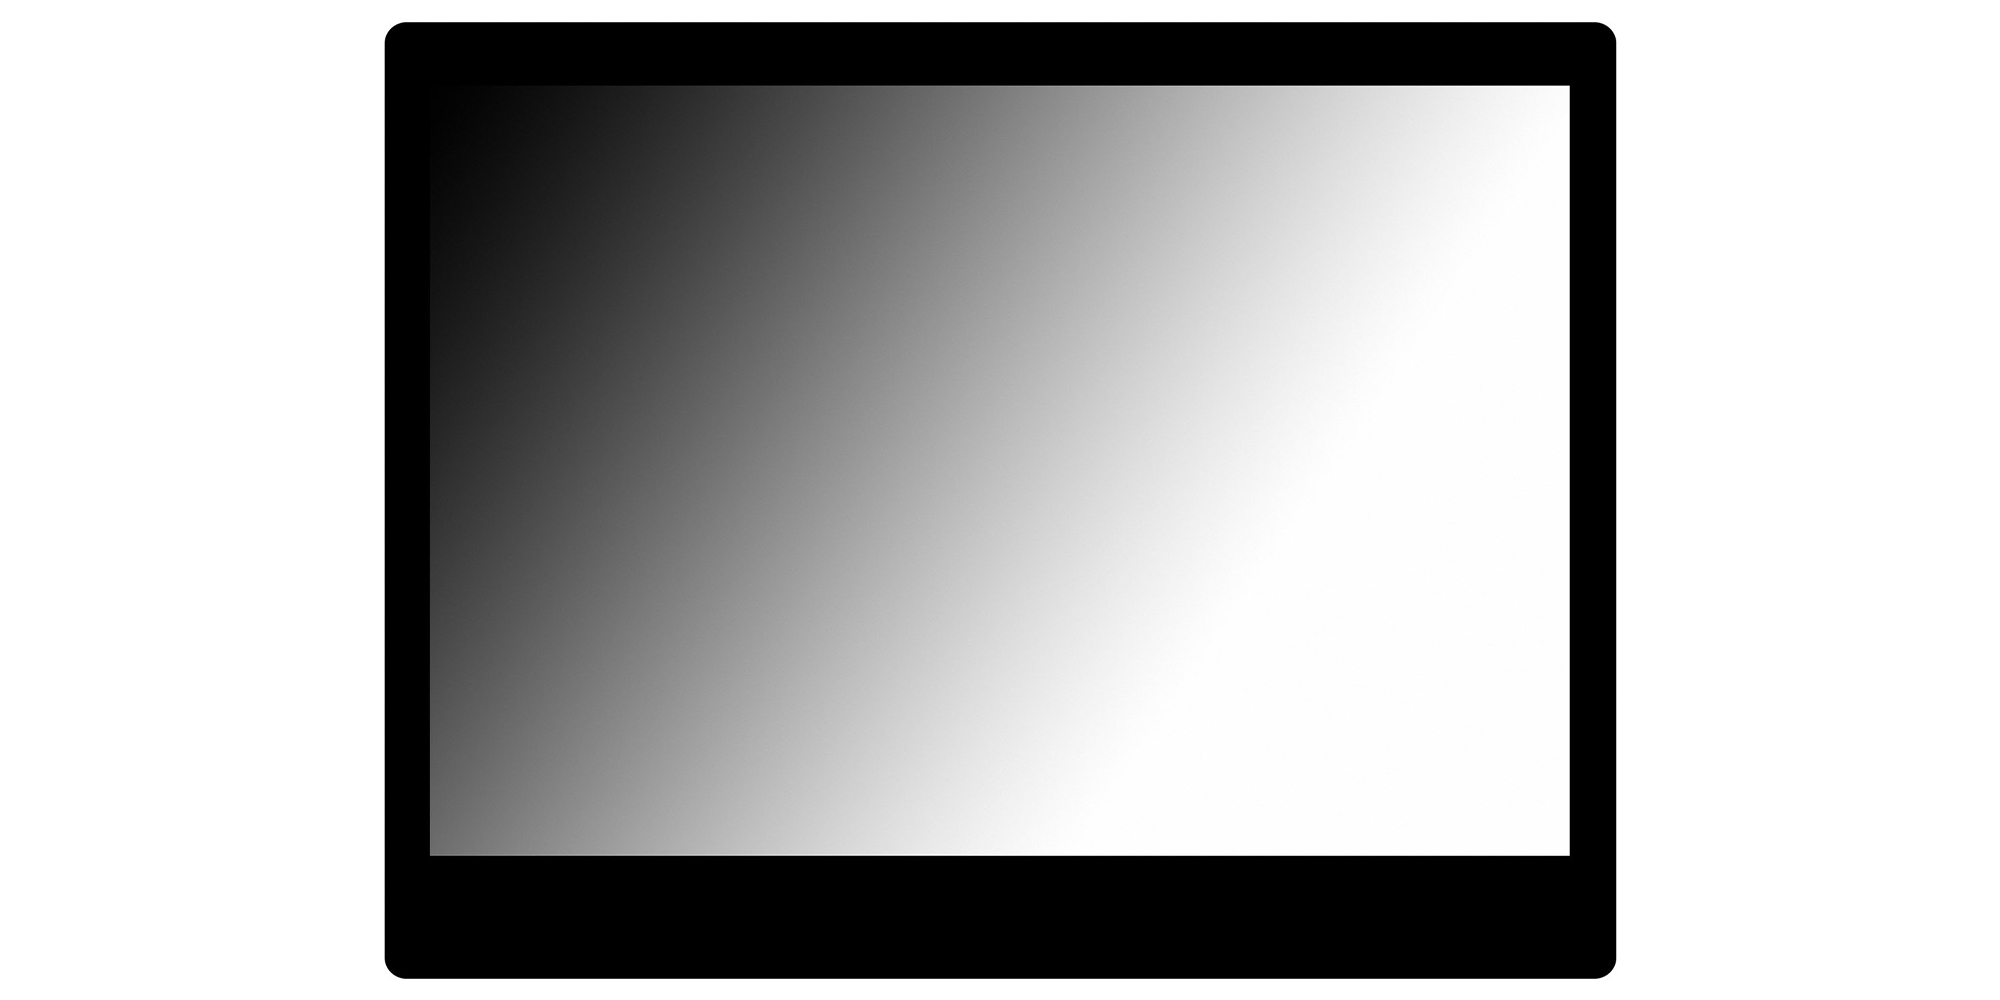 Osłona  LCD GGS Larmor do Canon R3 / R5 /  R5C